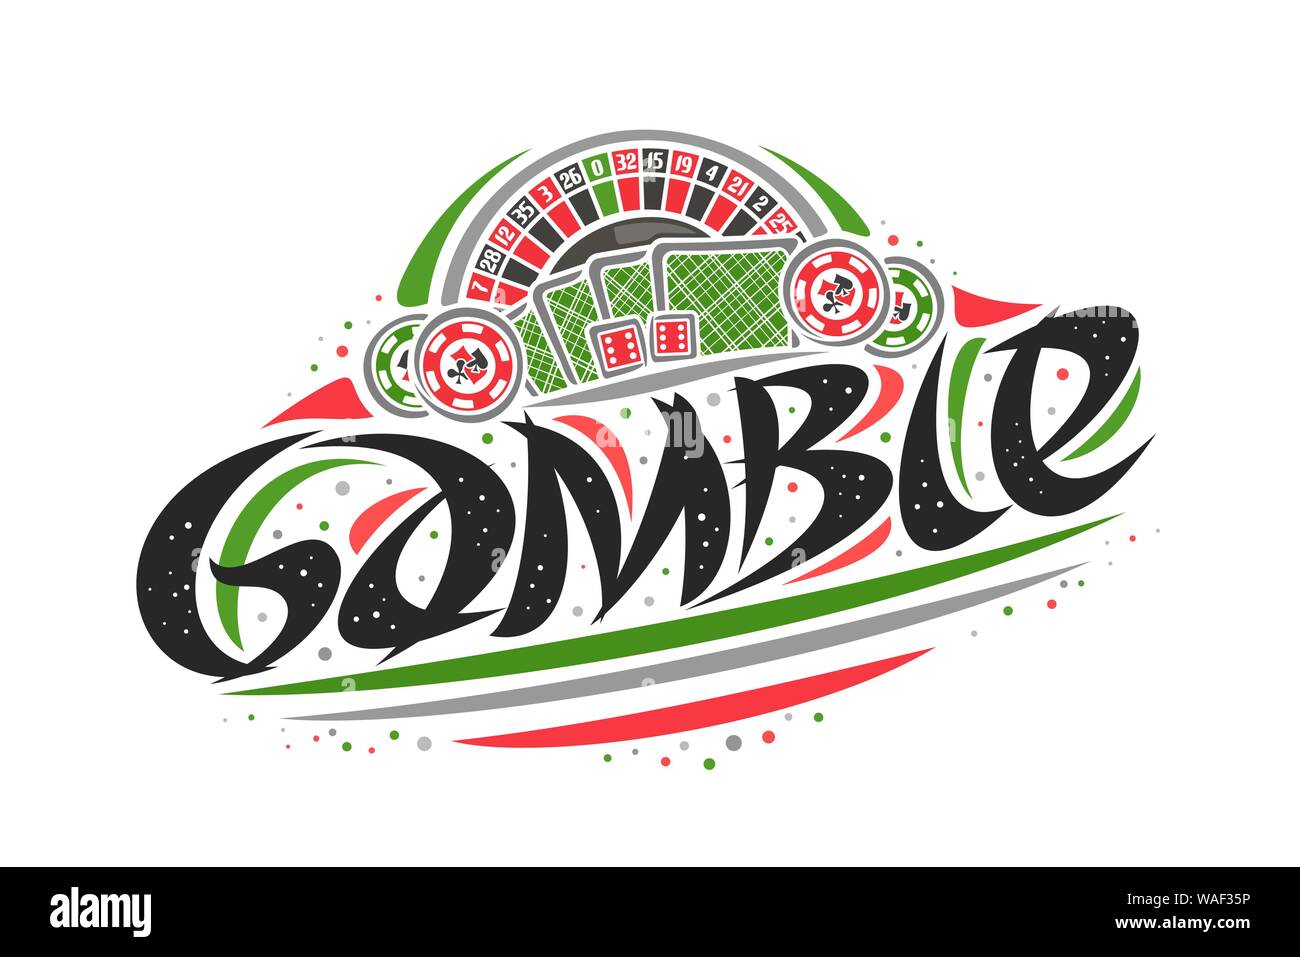 Vektor logo für Spielen, kreativen Entwurf Abbildung: American Roulette Rad, original dekorative Pinsel Schriftzug für Word Gamble, vereinfachende abst Stock Vektor